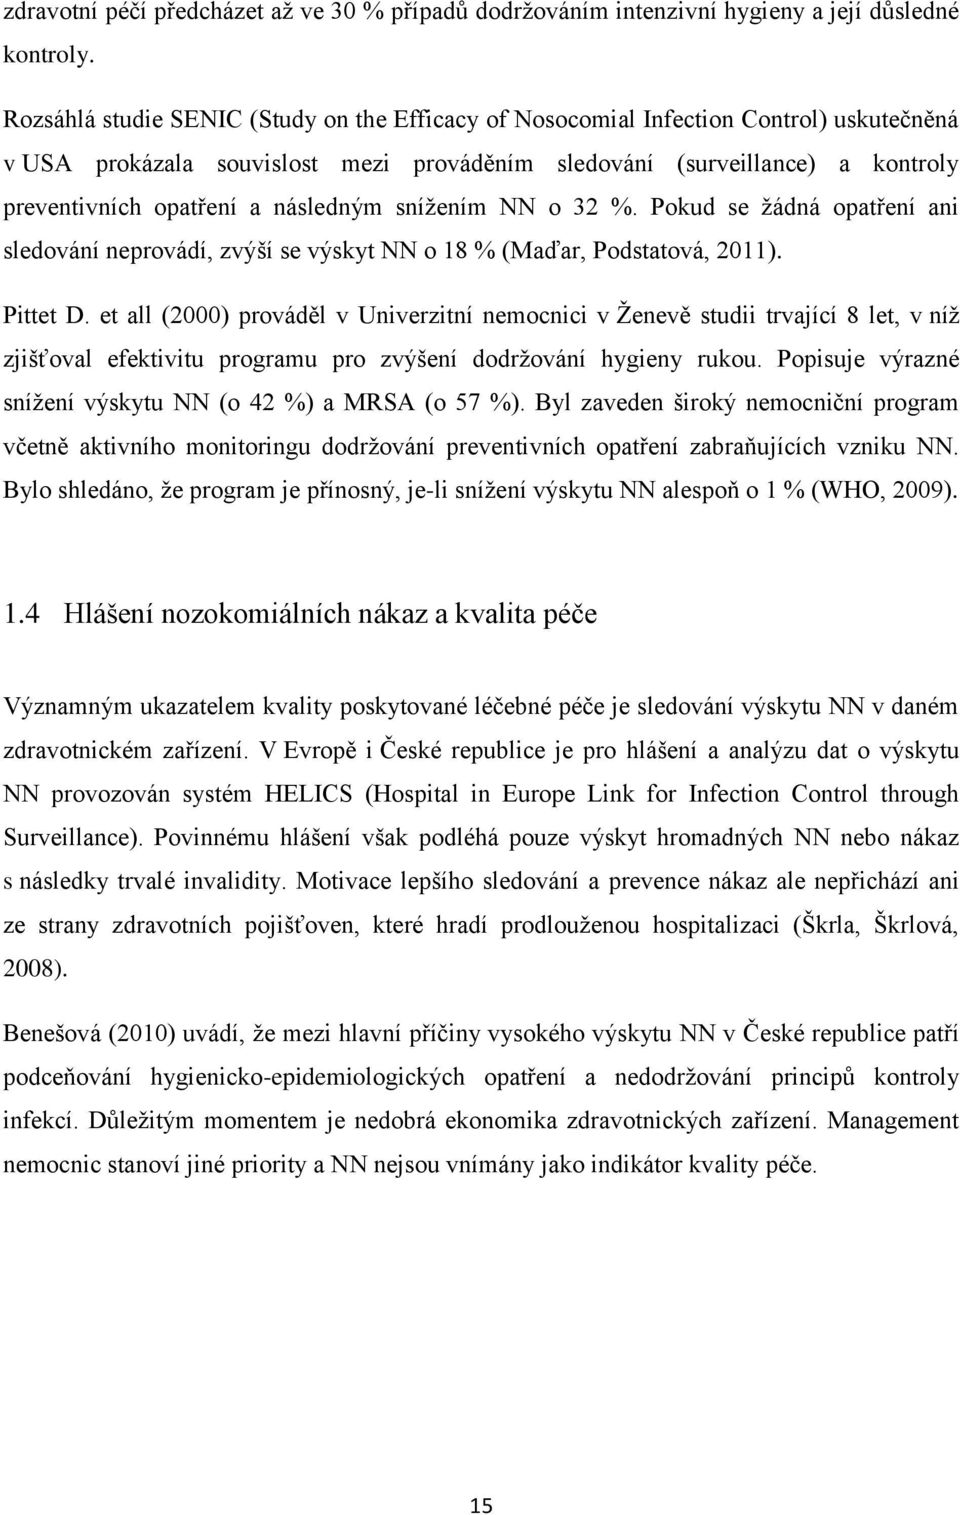 následným snížením NN o 32 %. Pokud se žádná opatření ani sledování neprovádí, zvýší se výskyt NN o 18 % (Maďar, Podstatová, 2011). Pittet D.